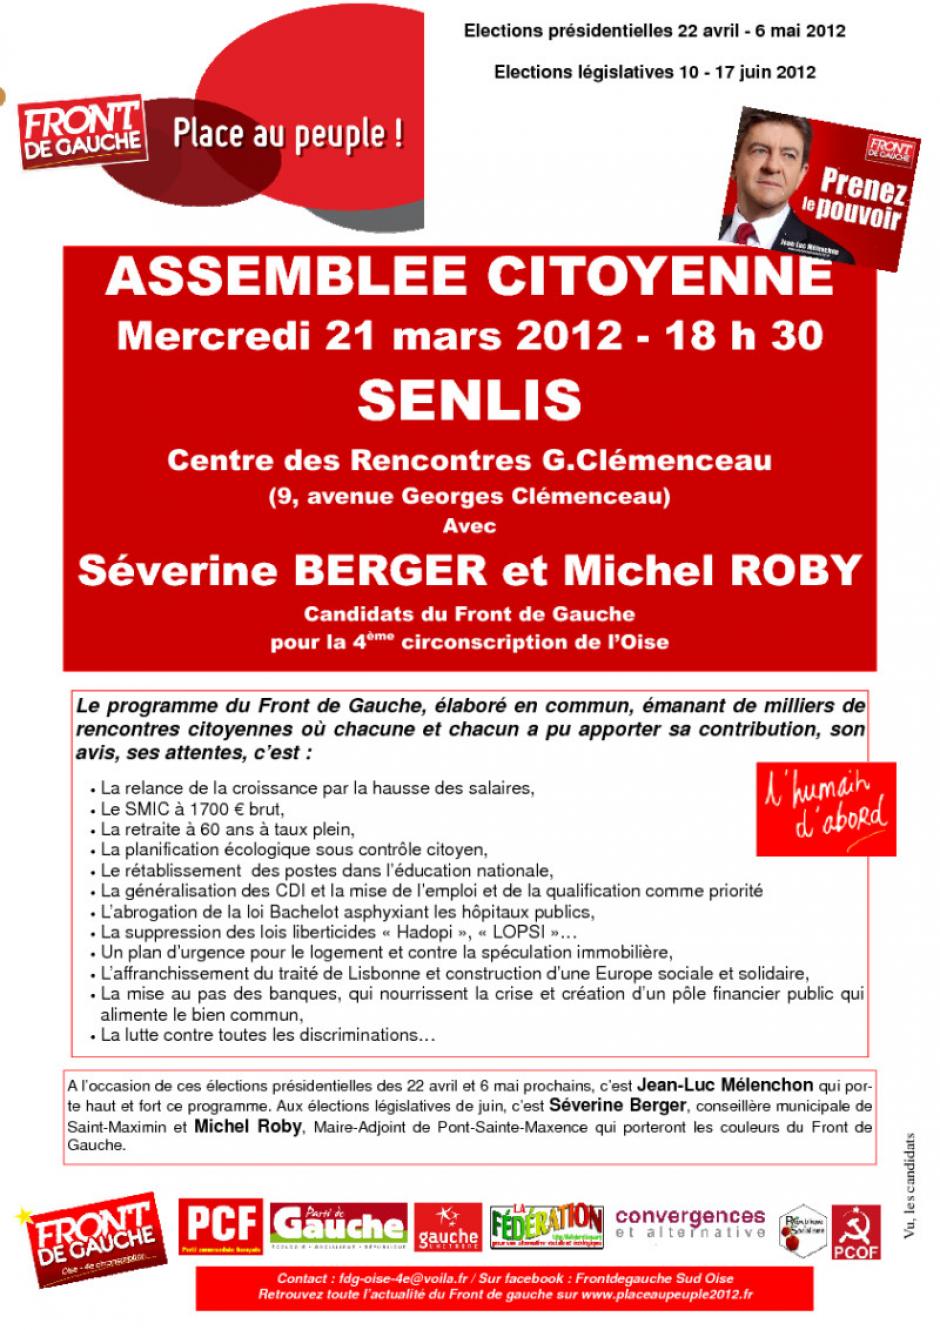 21 mars, Senlis - Assemblée citoyenne du Front de gauche - Affiche